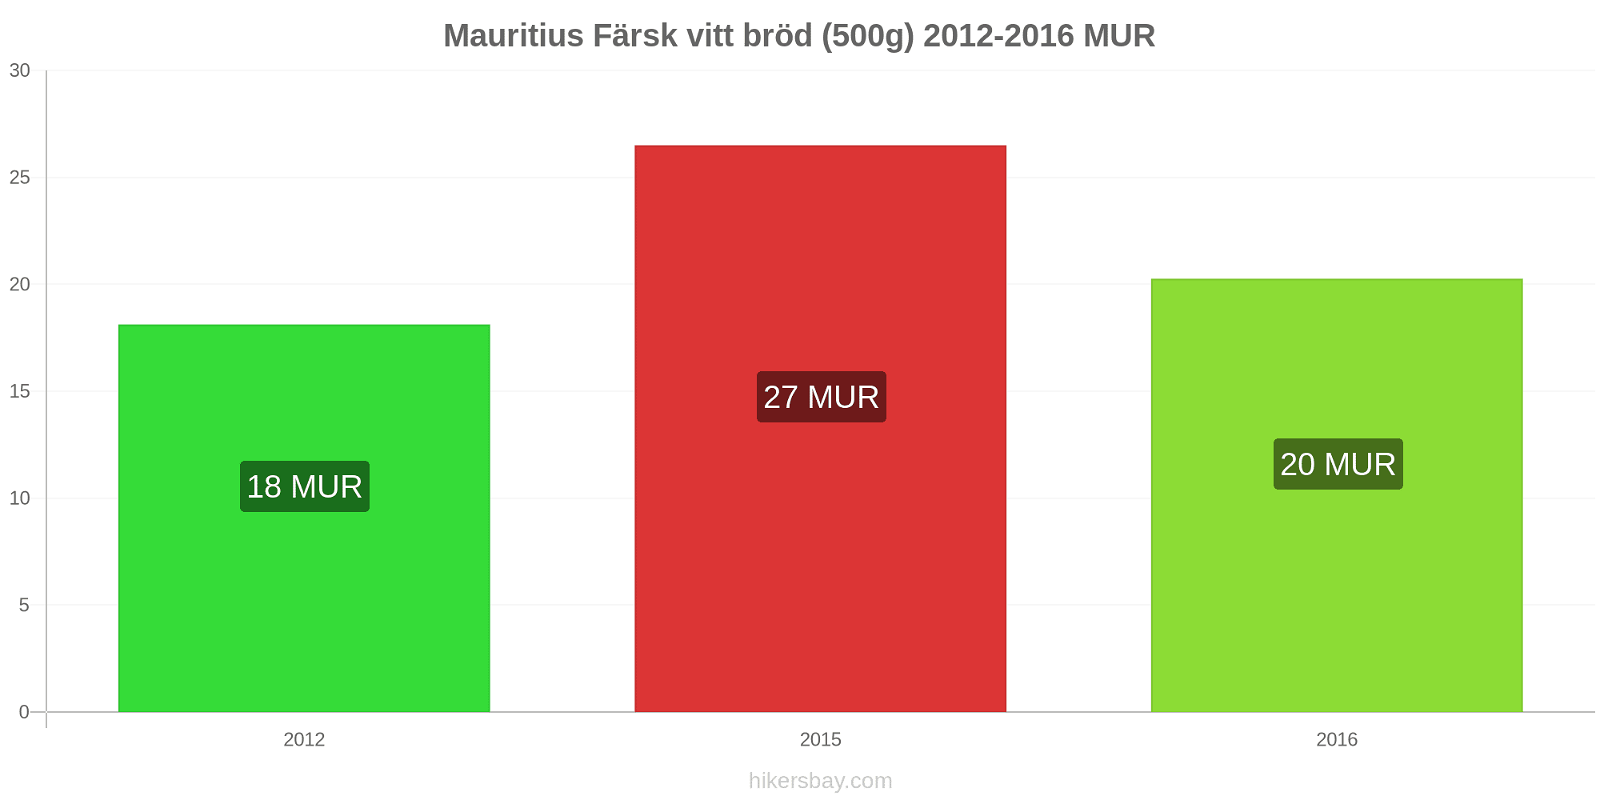 Mauritius prisändringar Färsk vitt bröd (500g) hikersbay.com